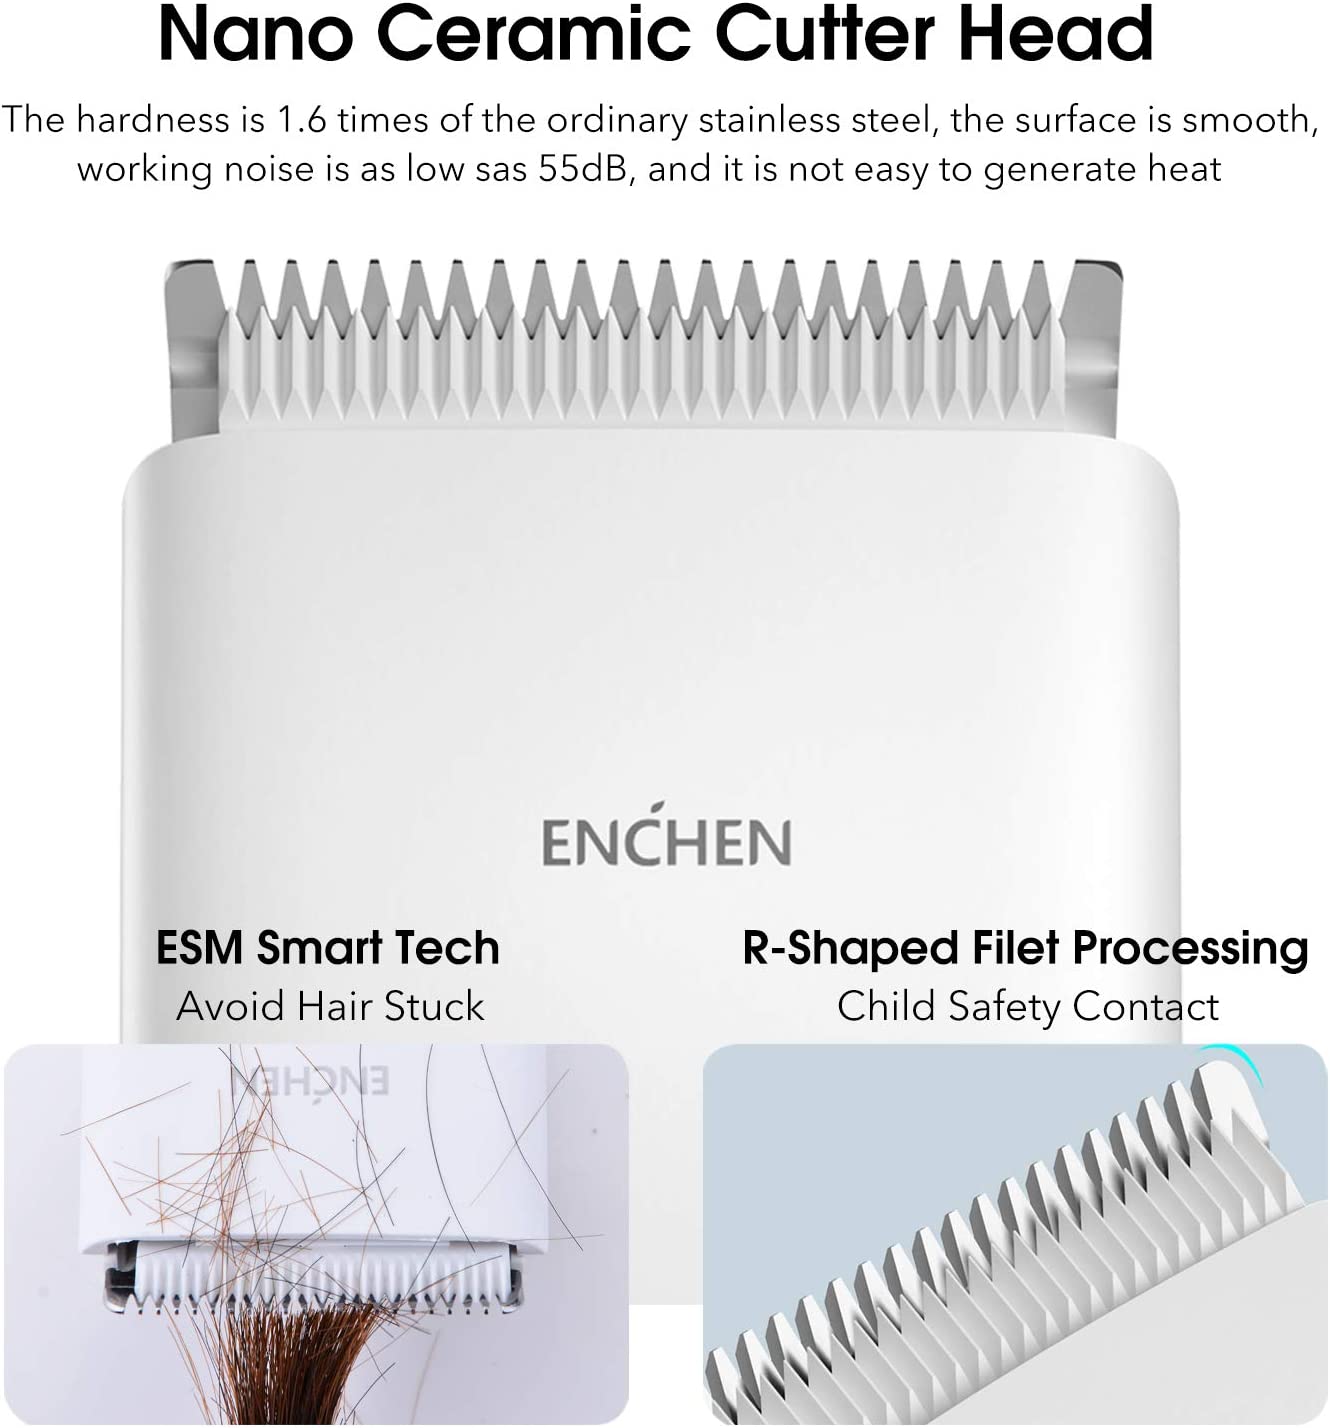 ماكينة قص الشعر الكهربائية اللاسلكية متعددة الوظائف Enchen Boost - أبيض